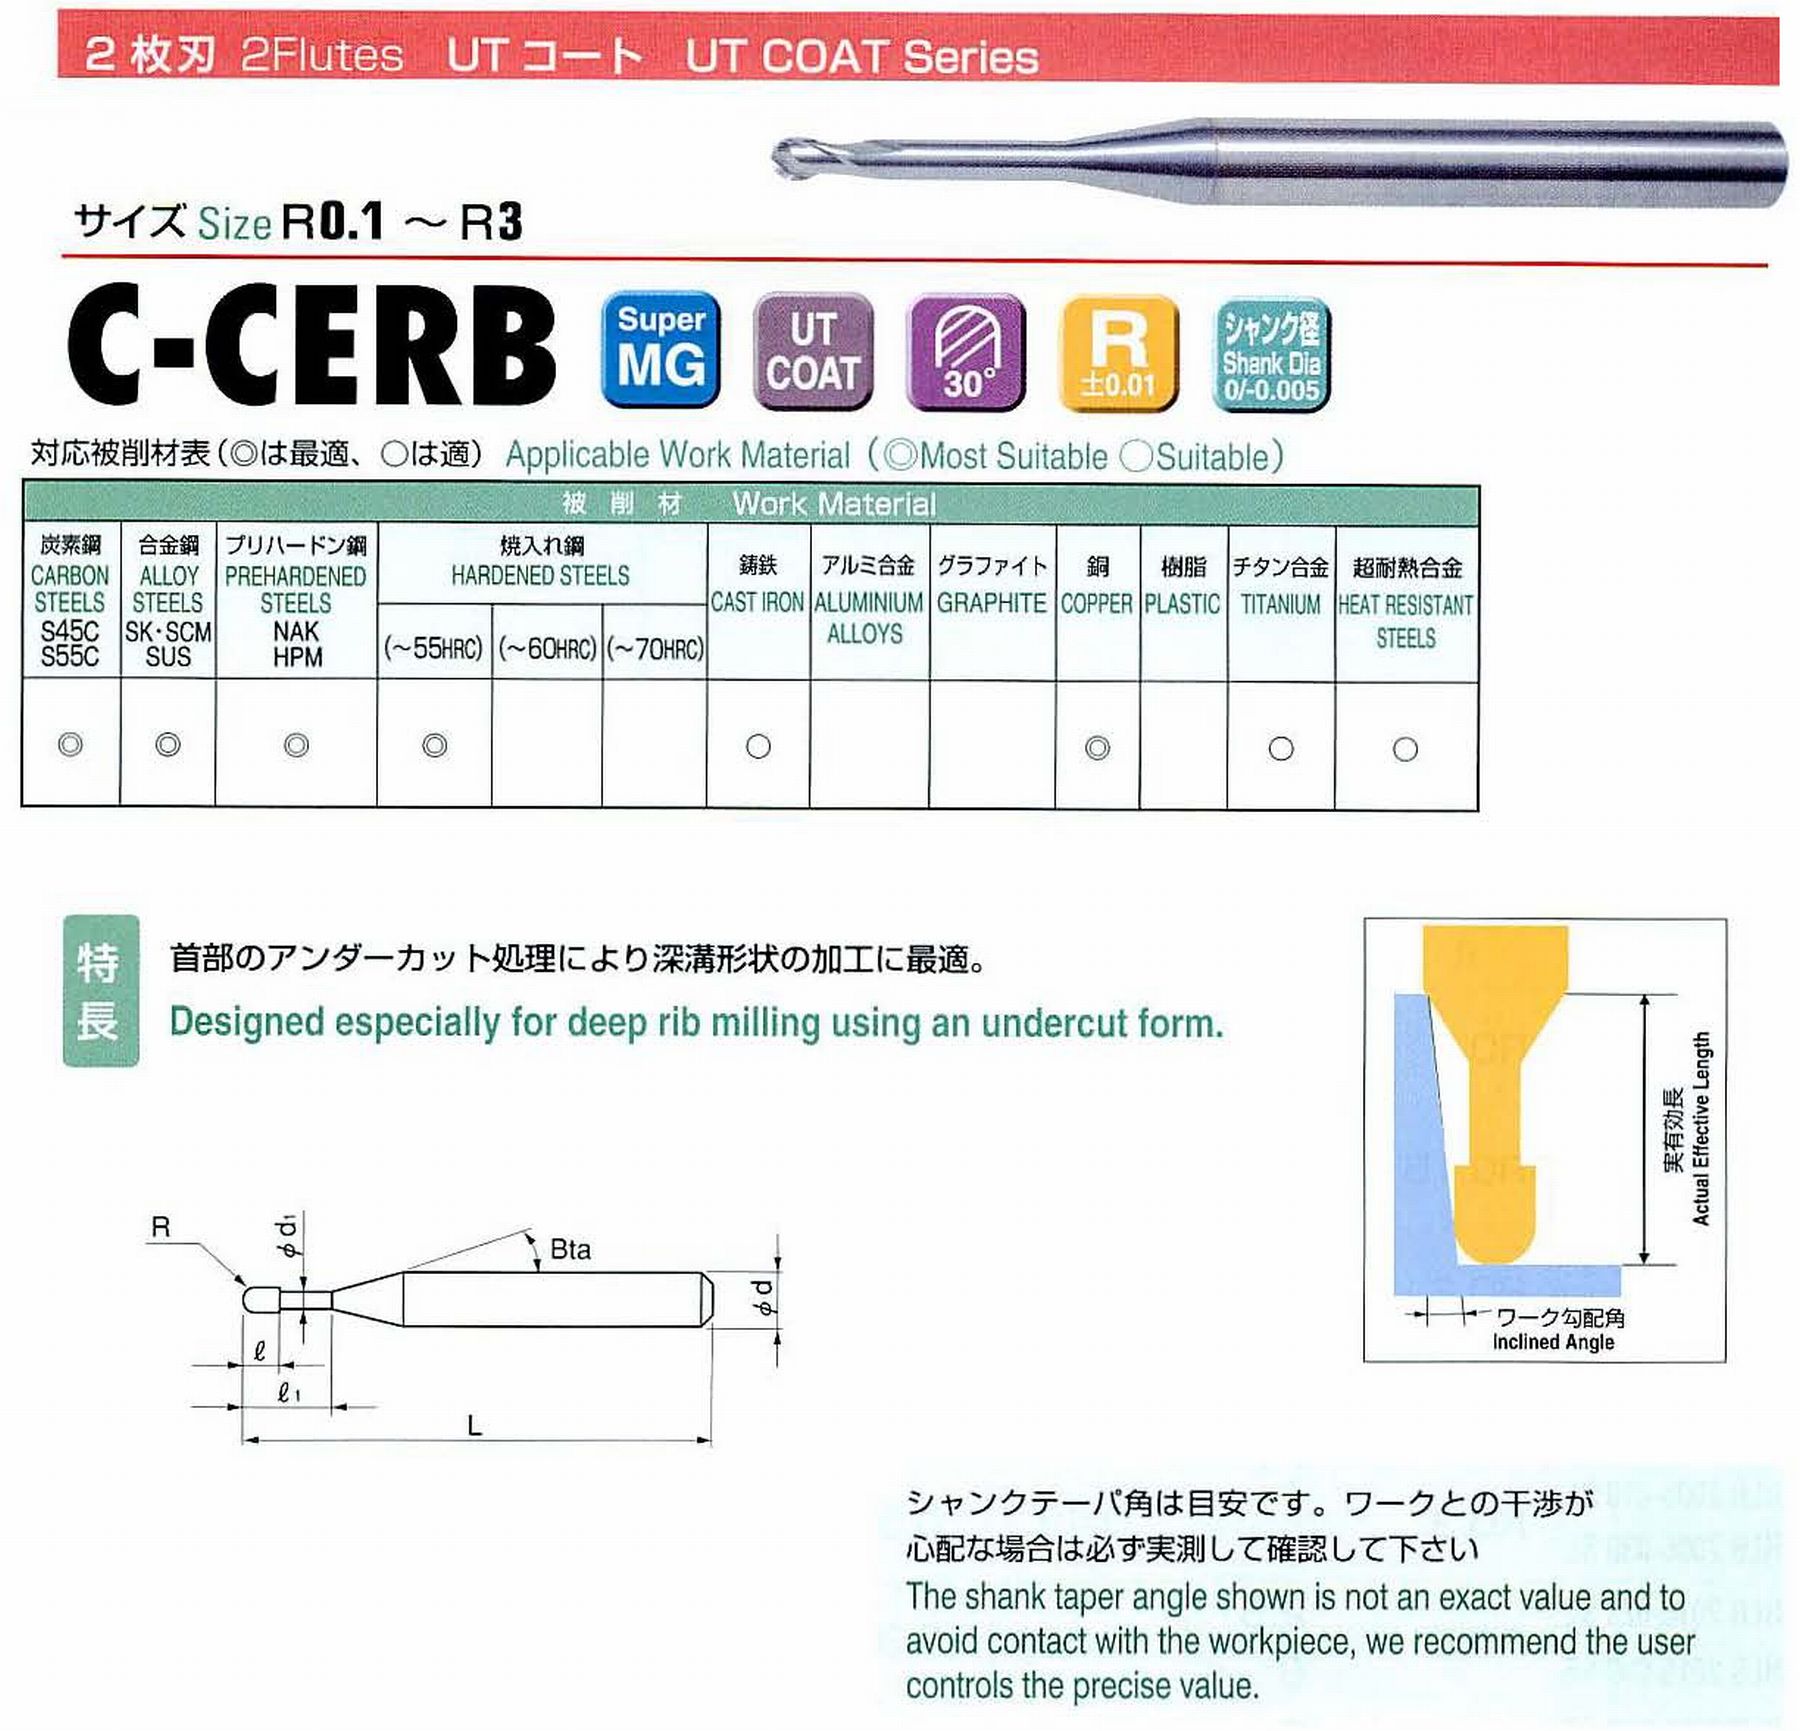 ユニオンツール 2枚刃 C-CERB2006-10 ボール半径R0.3 有効長10 刃長0.48 首径0.57 シャンクテーパ角16° 全長50 シャンク径4